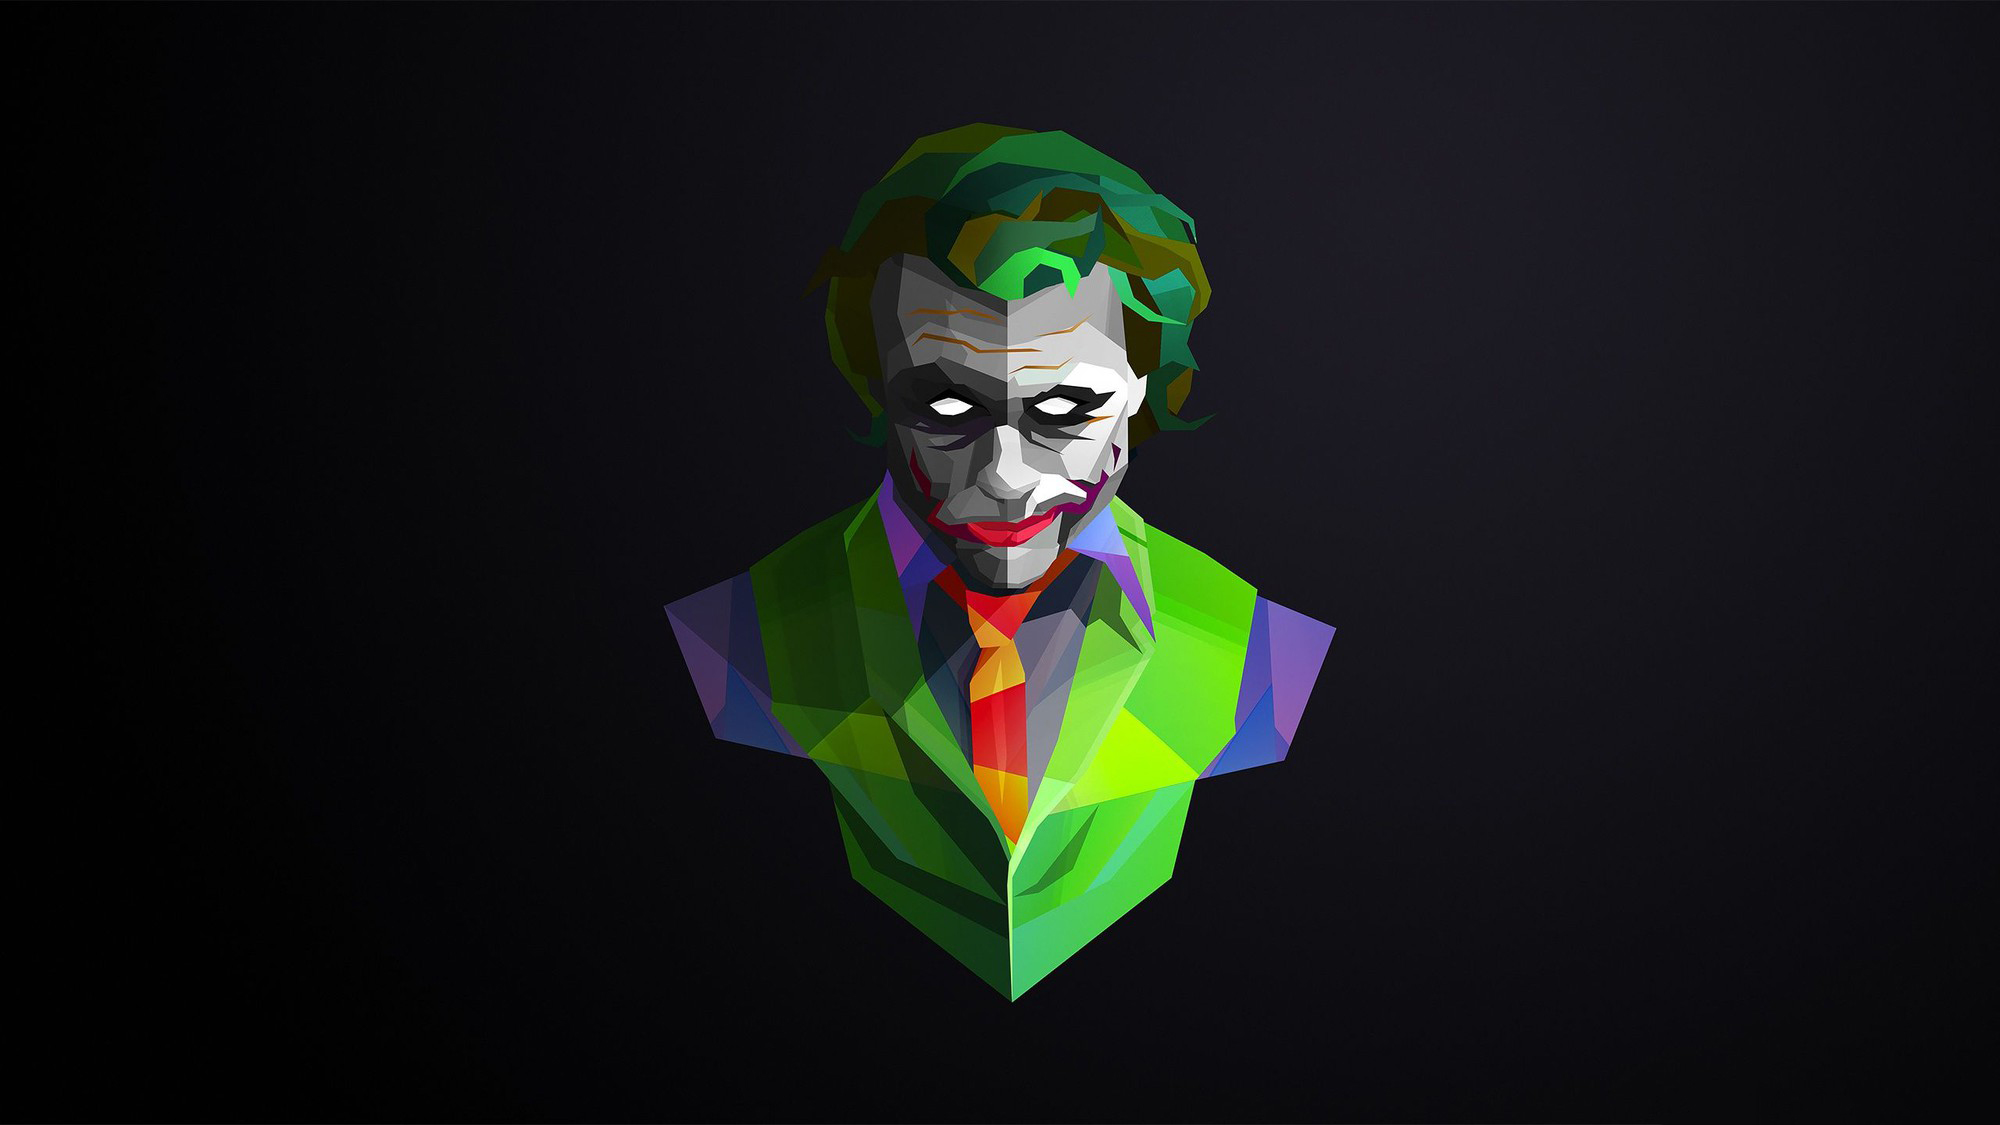 Joker Art Wallpapers for Desktop